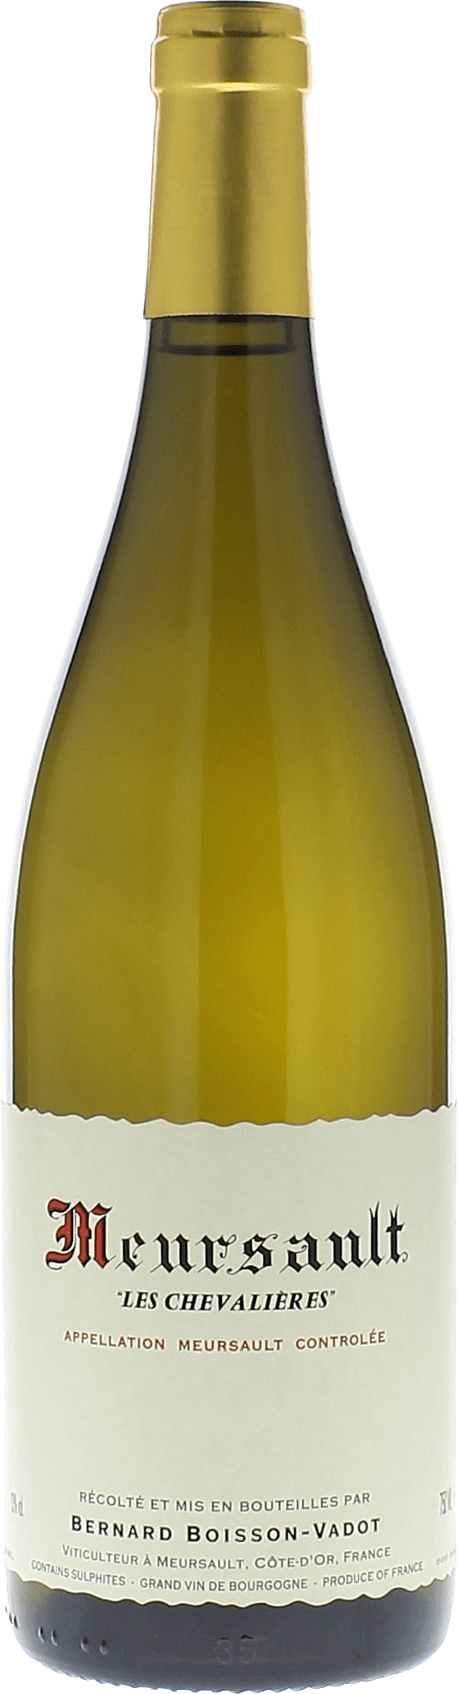 Meursault chevalires 2016  BOISSON VADOT Bernard, Bourgogne blanc